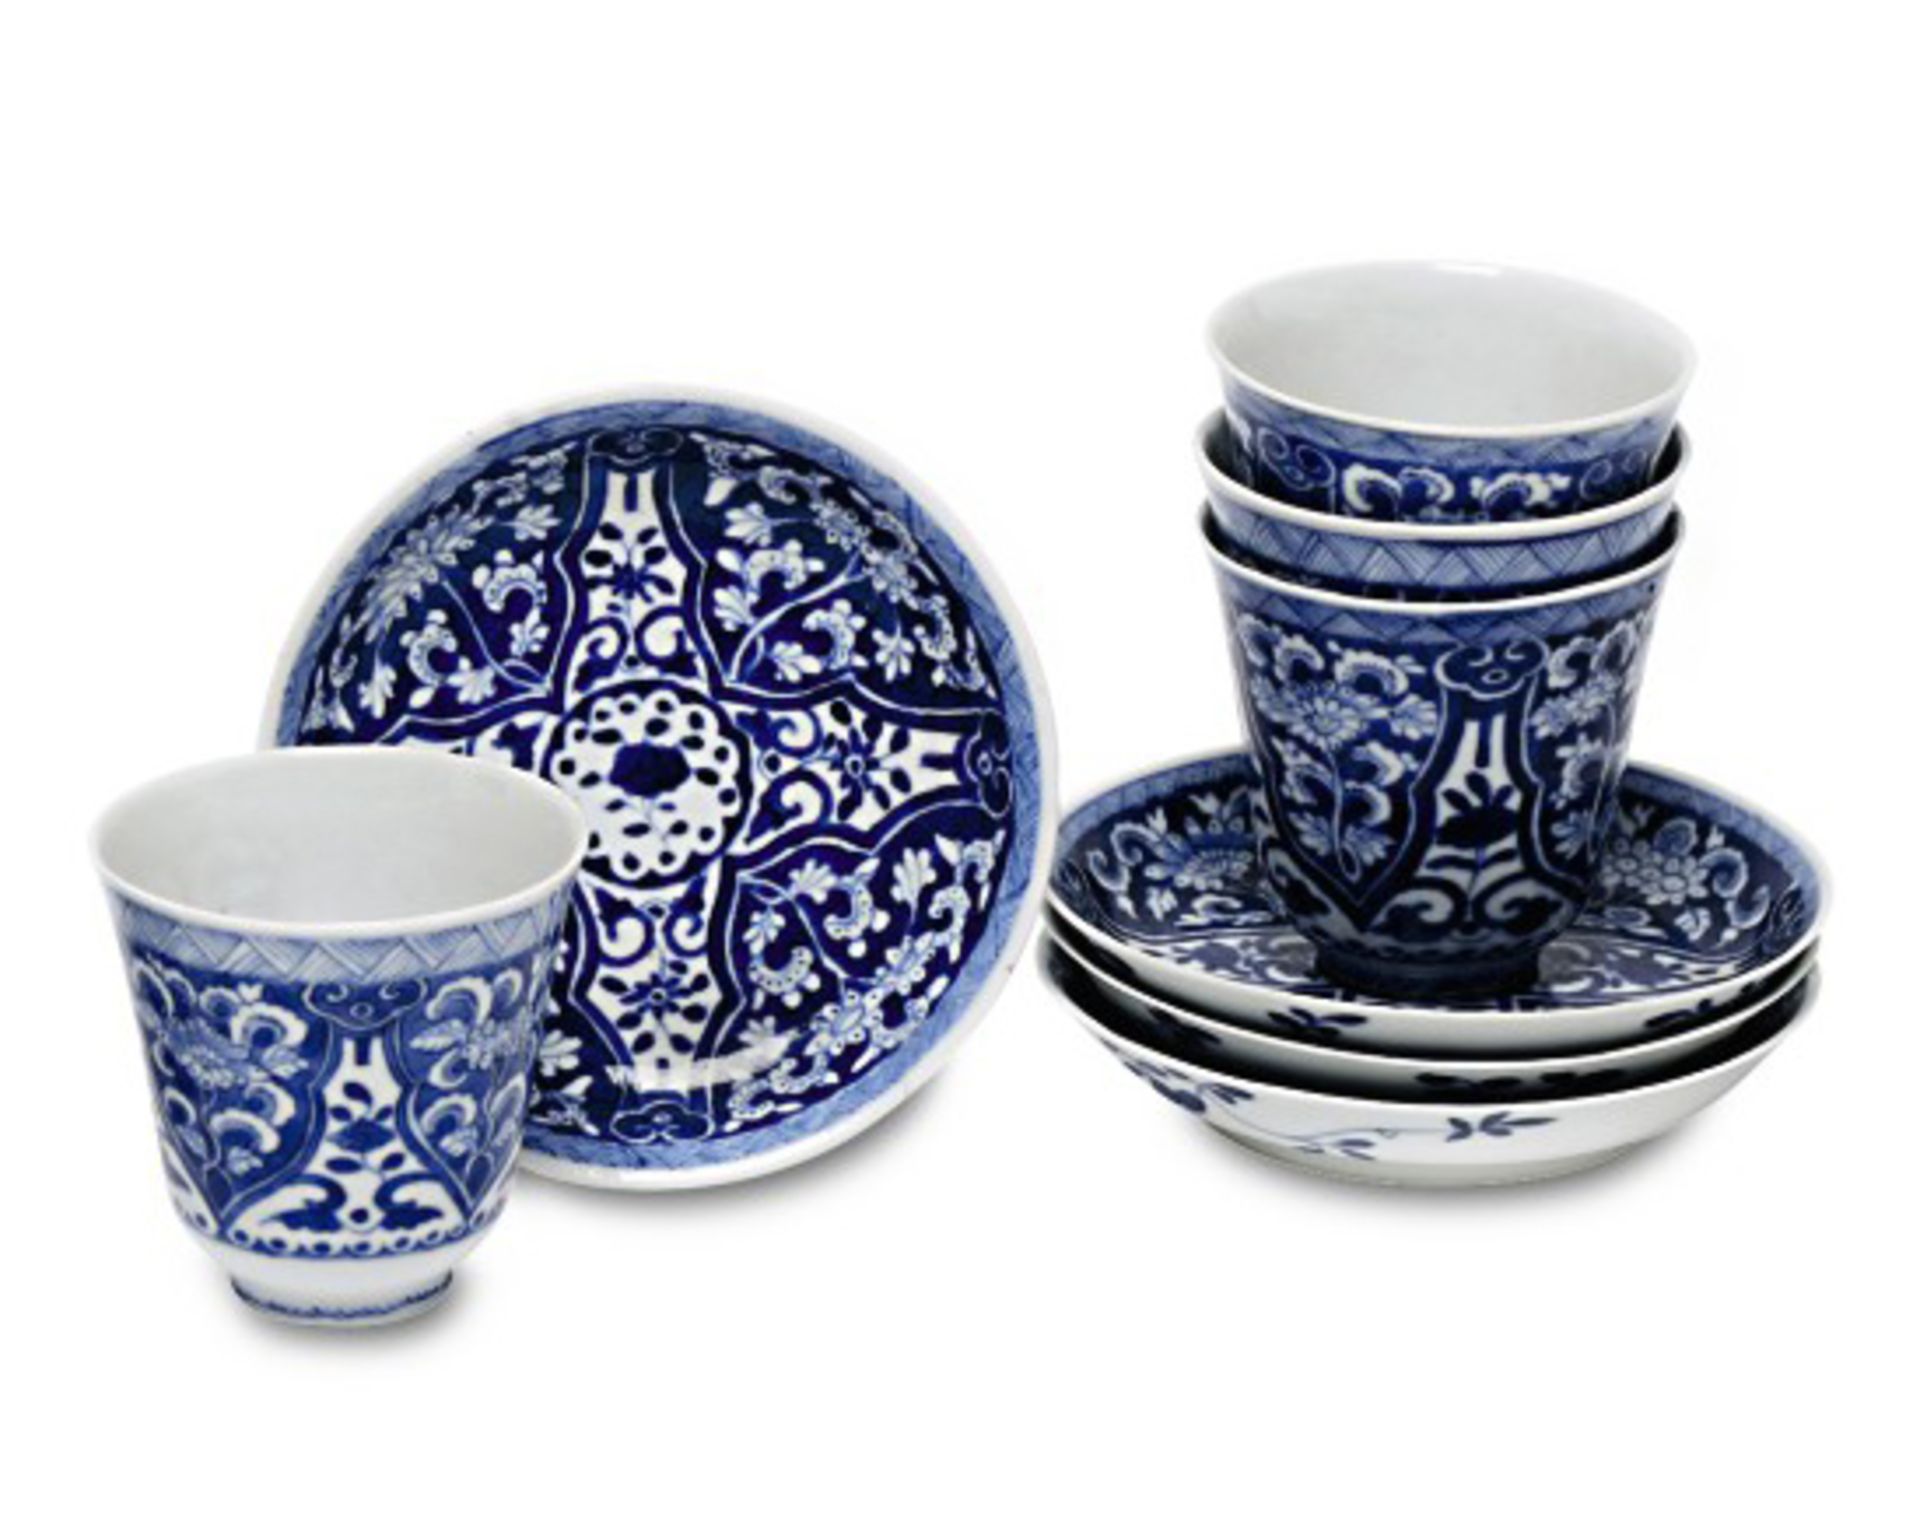 Vier Becher mit UntertellernChina, Qing, wohl Mitte 19. Jh.Porzellan. Floraler Blaudekor.